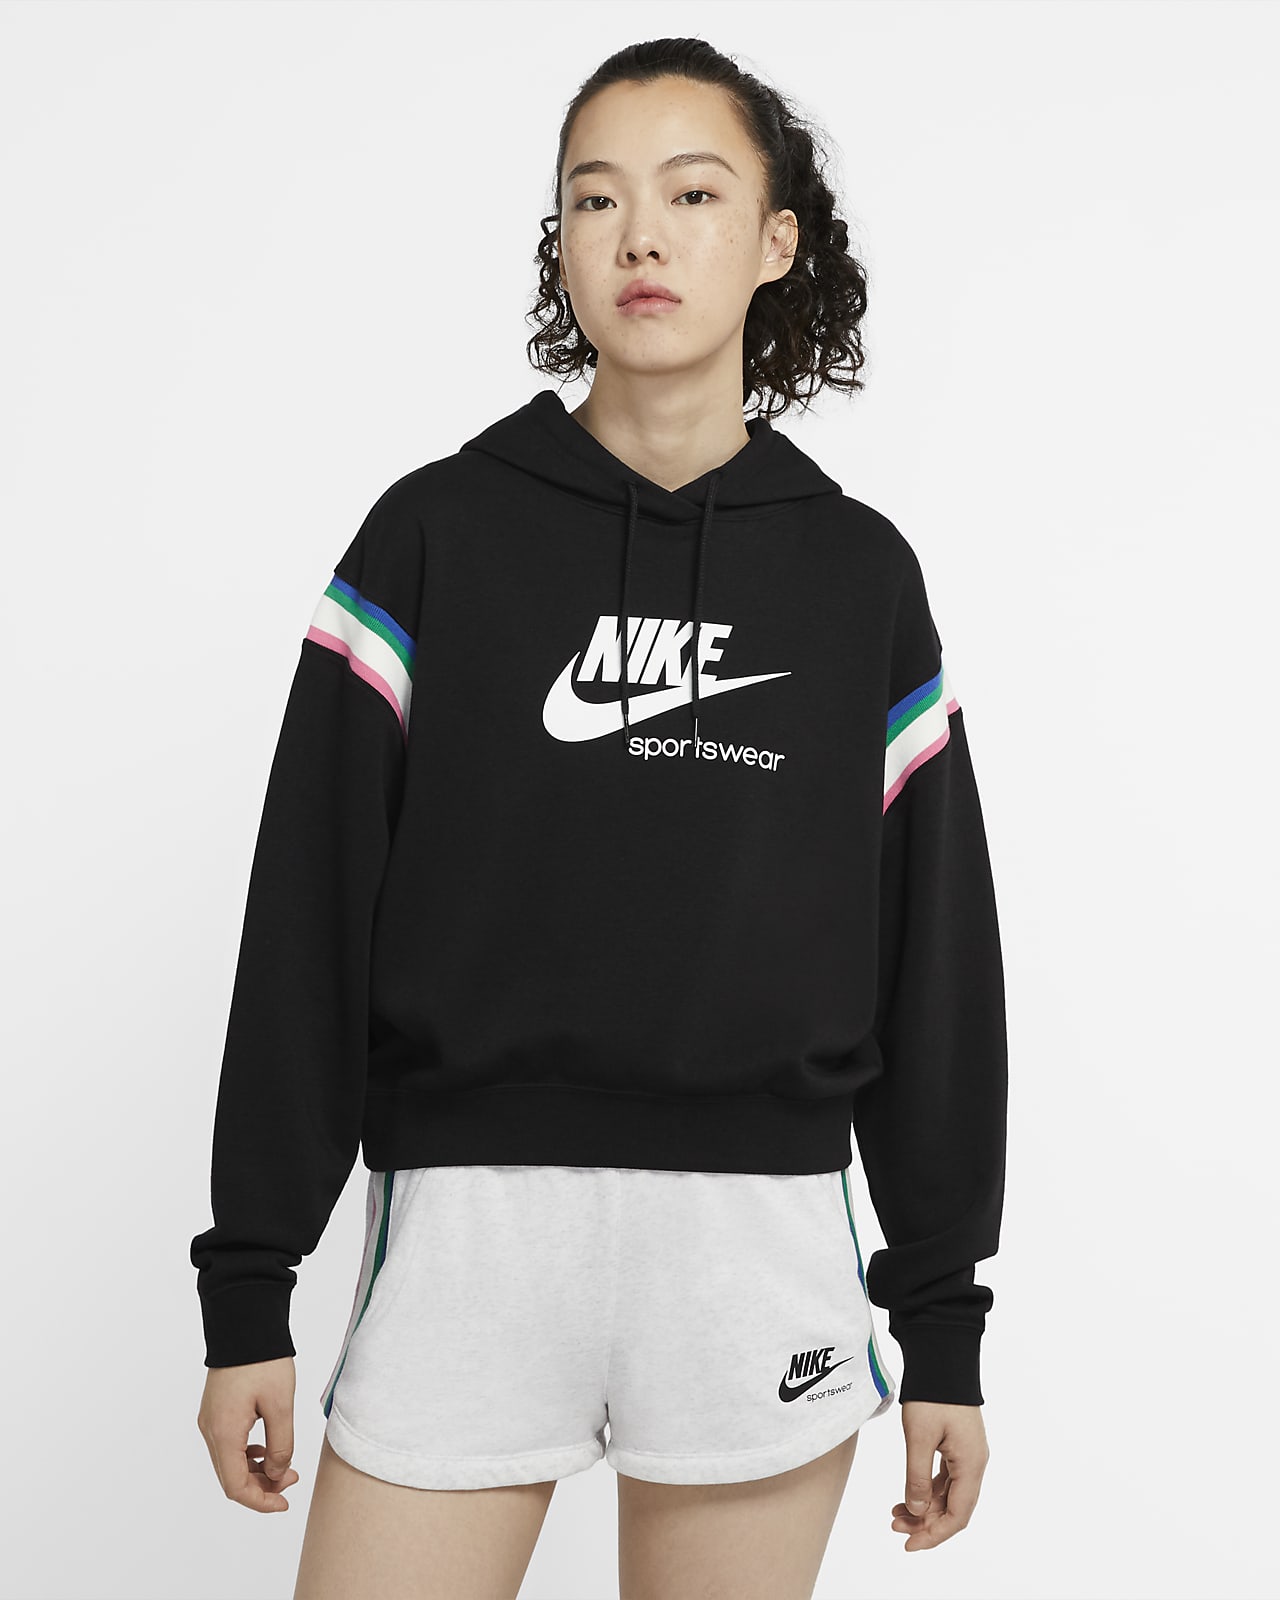 nike sportswear heritage women's hoodie